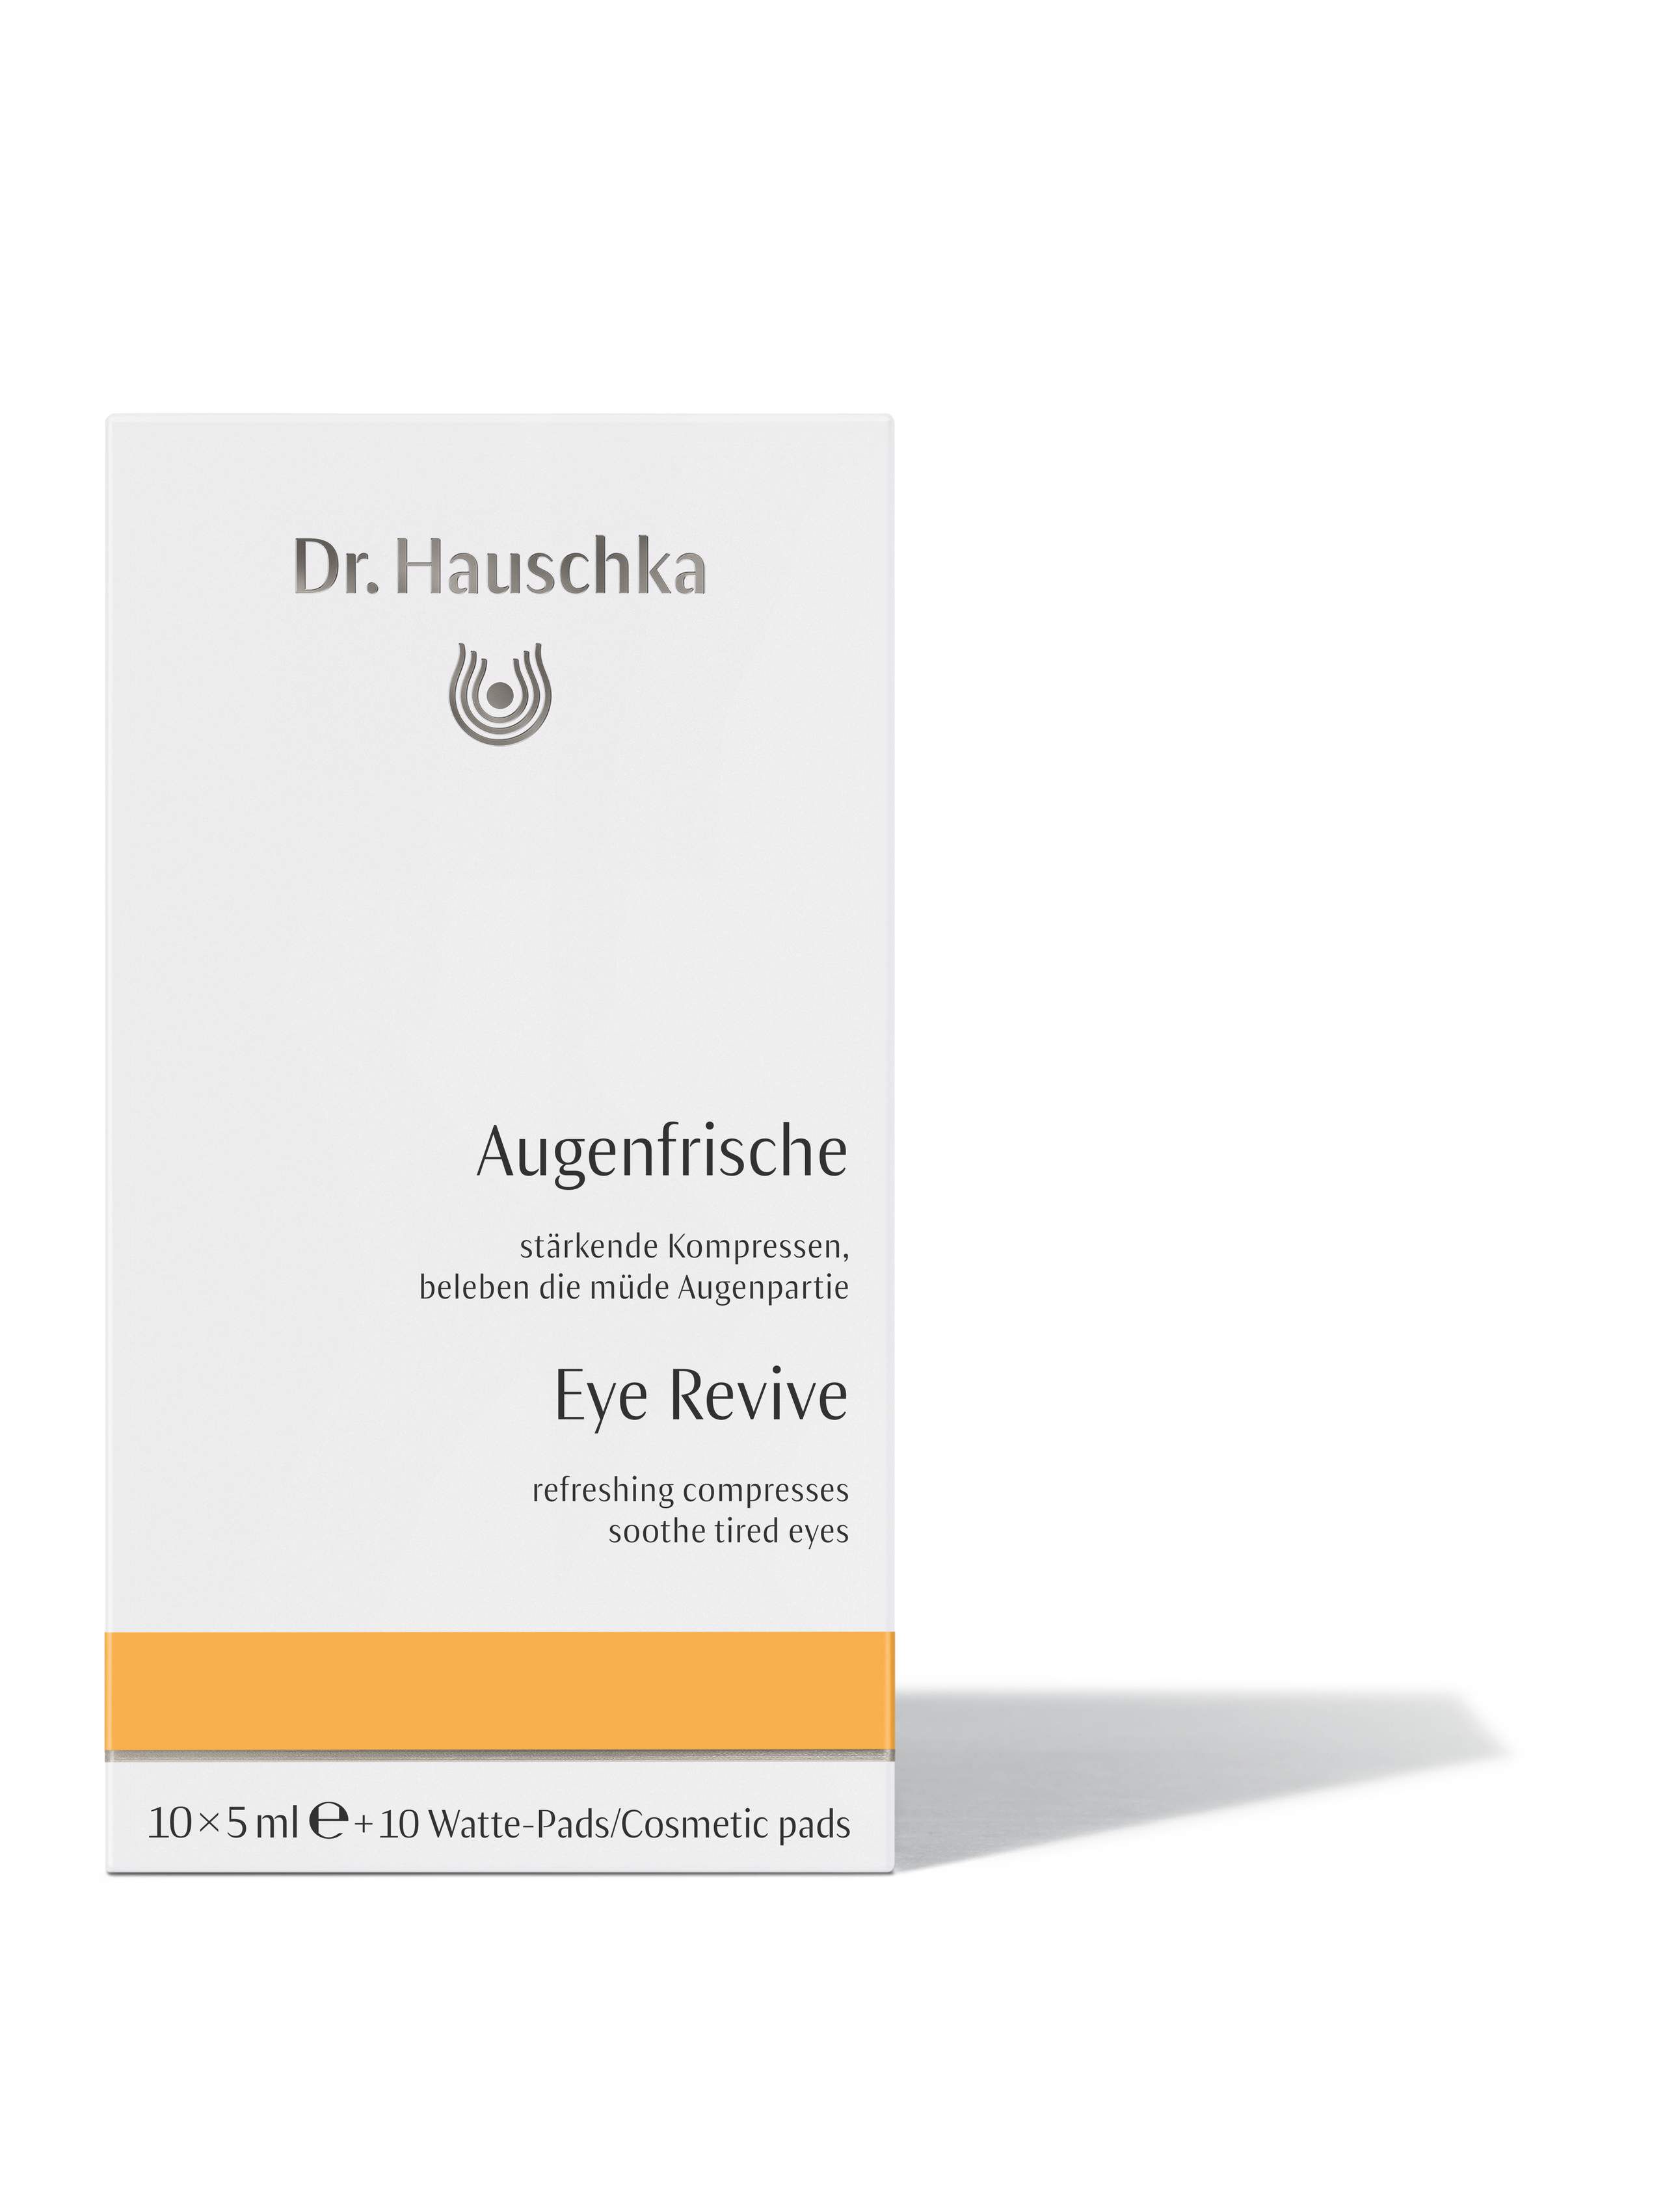 DR.HAUSCHKA kühlende Augenampullen